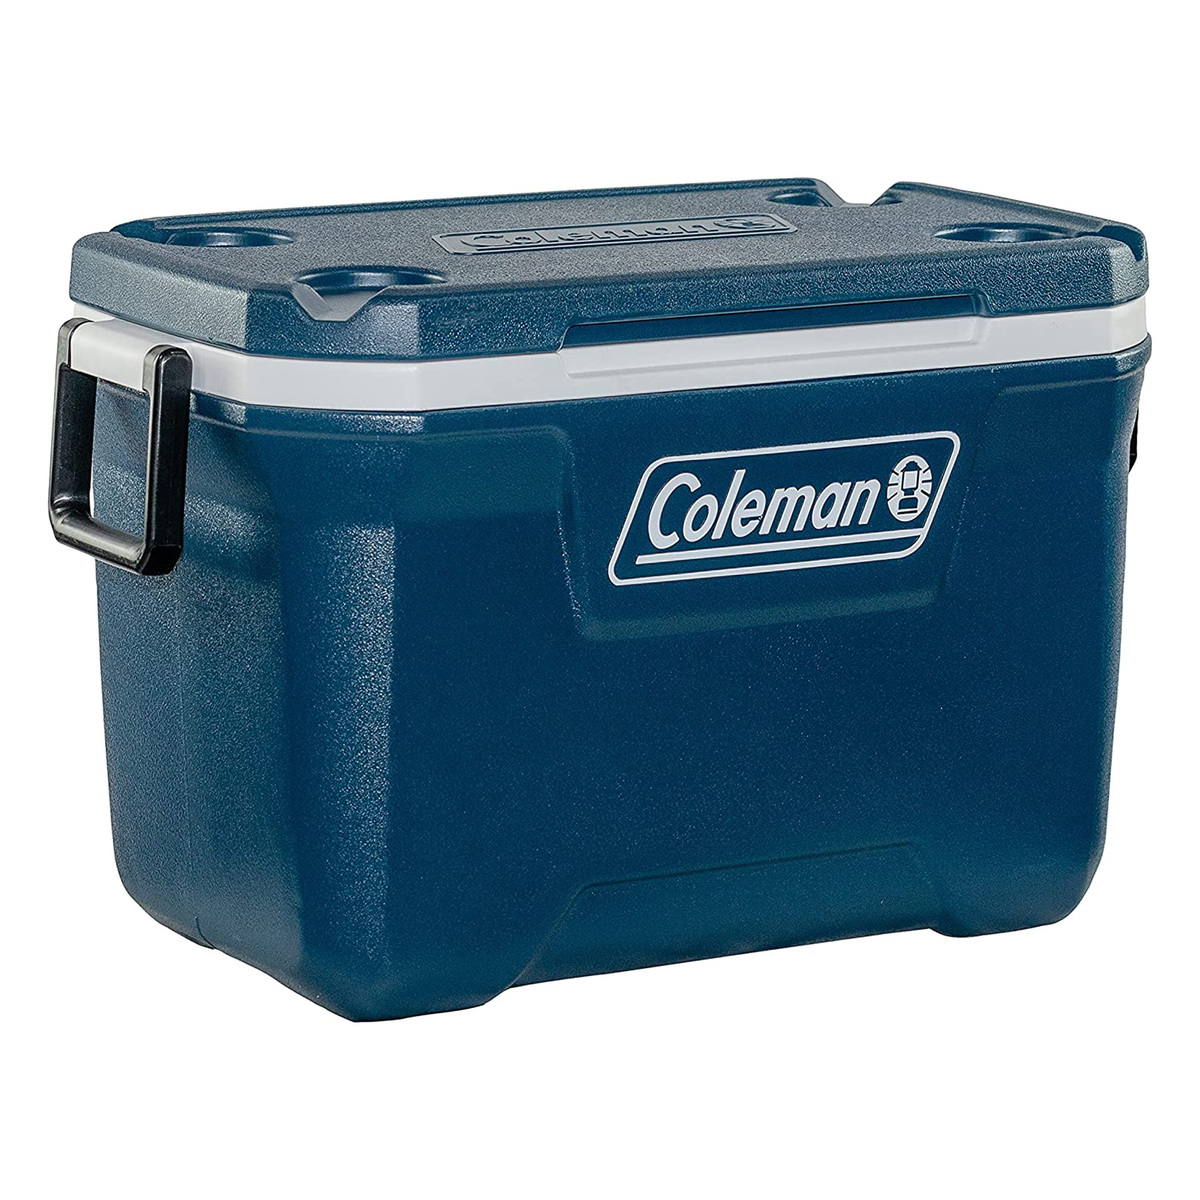 Coleman 52 Quart Xtreme Chest Cooler, Space Blue, 37212